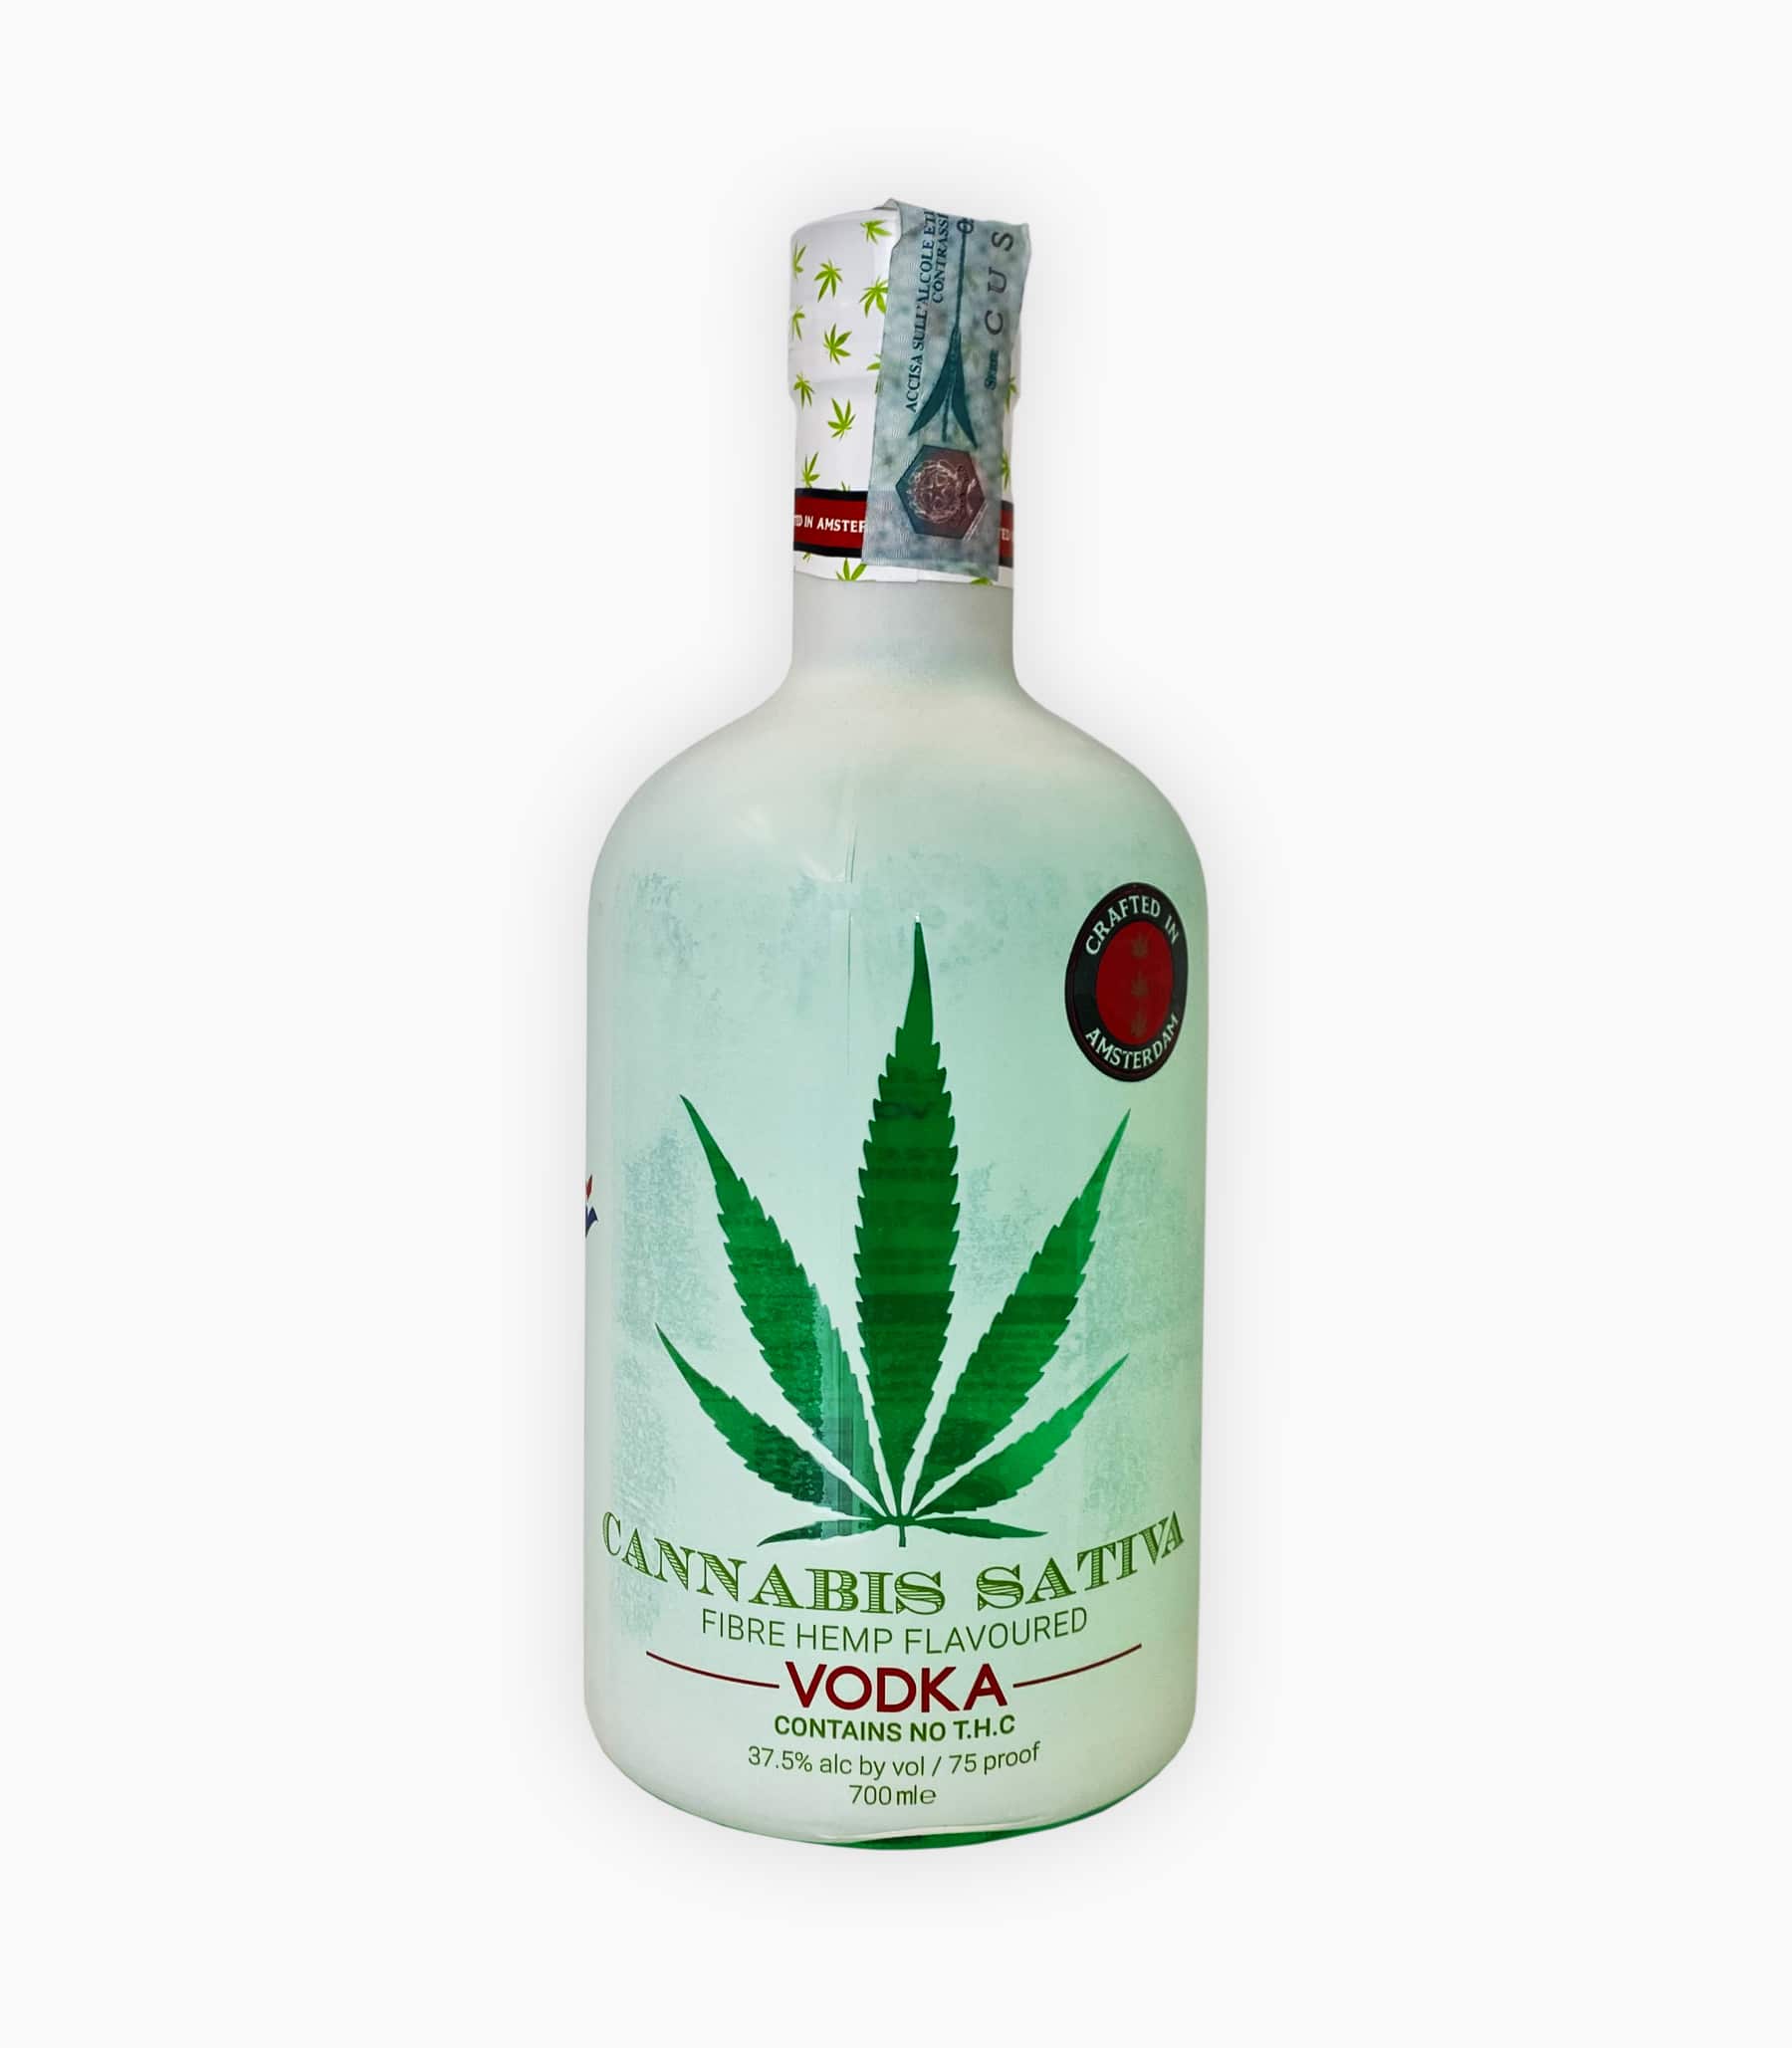 Cannabis Sativa Vodka Vendita Al Prezzo €2910 Spirits